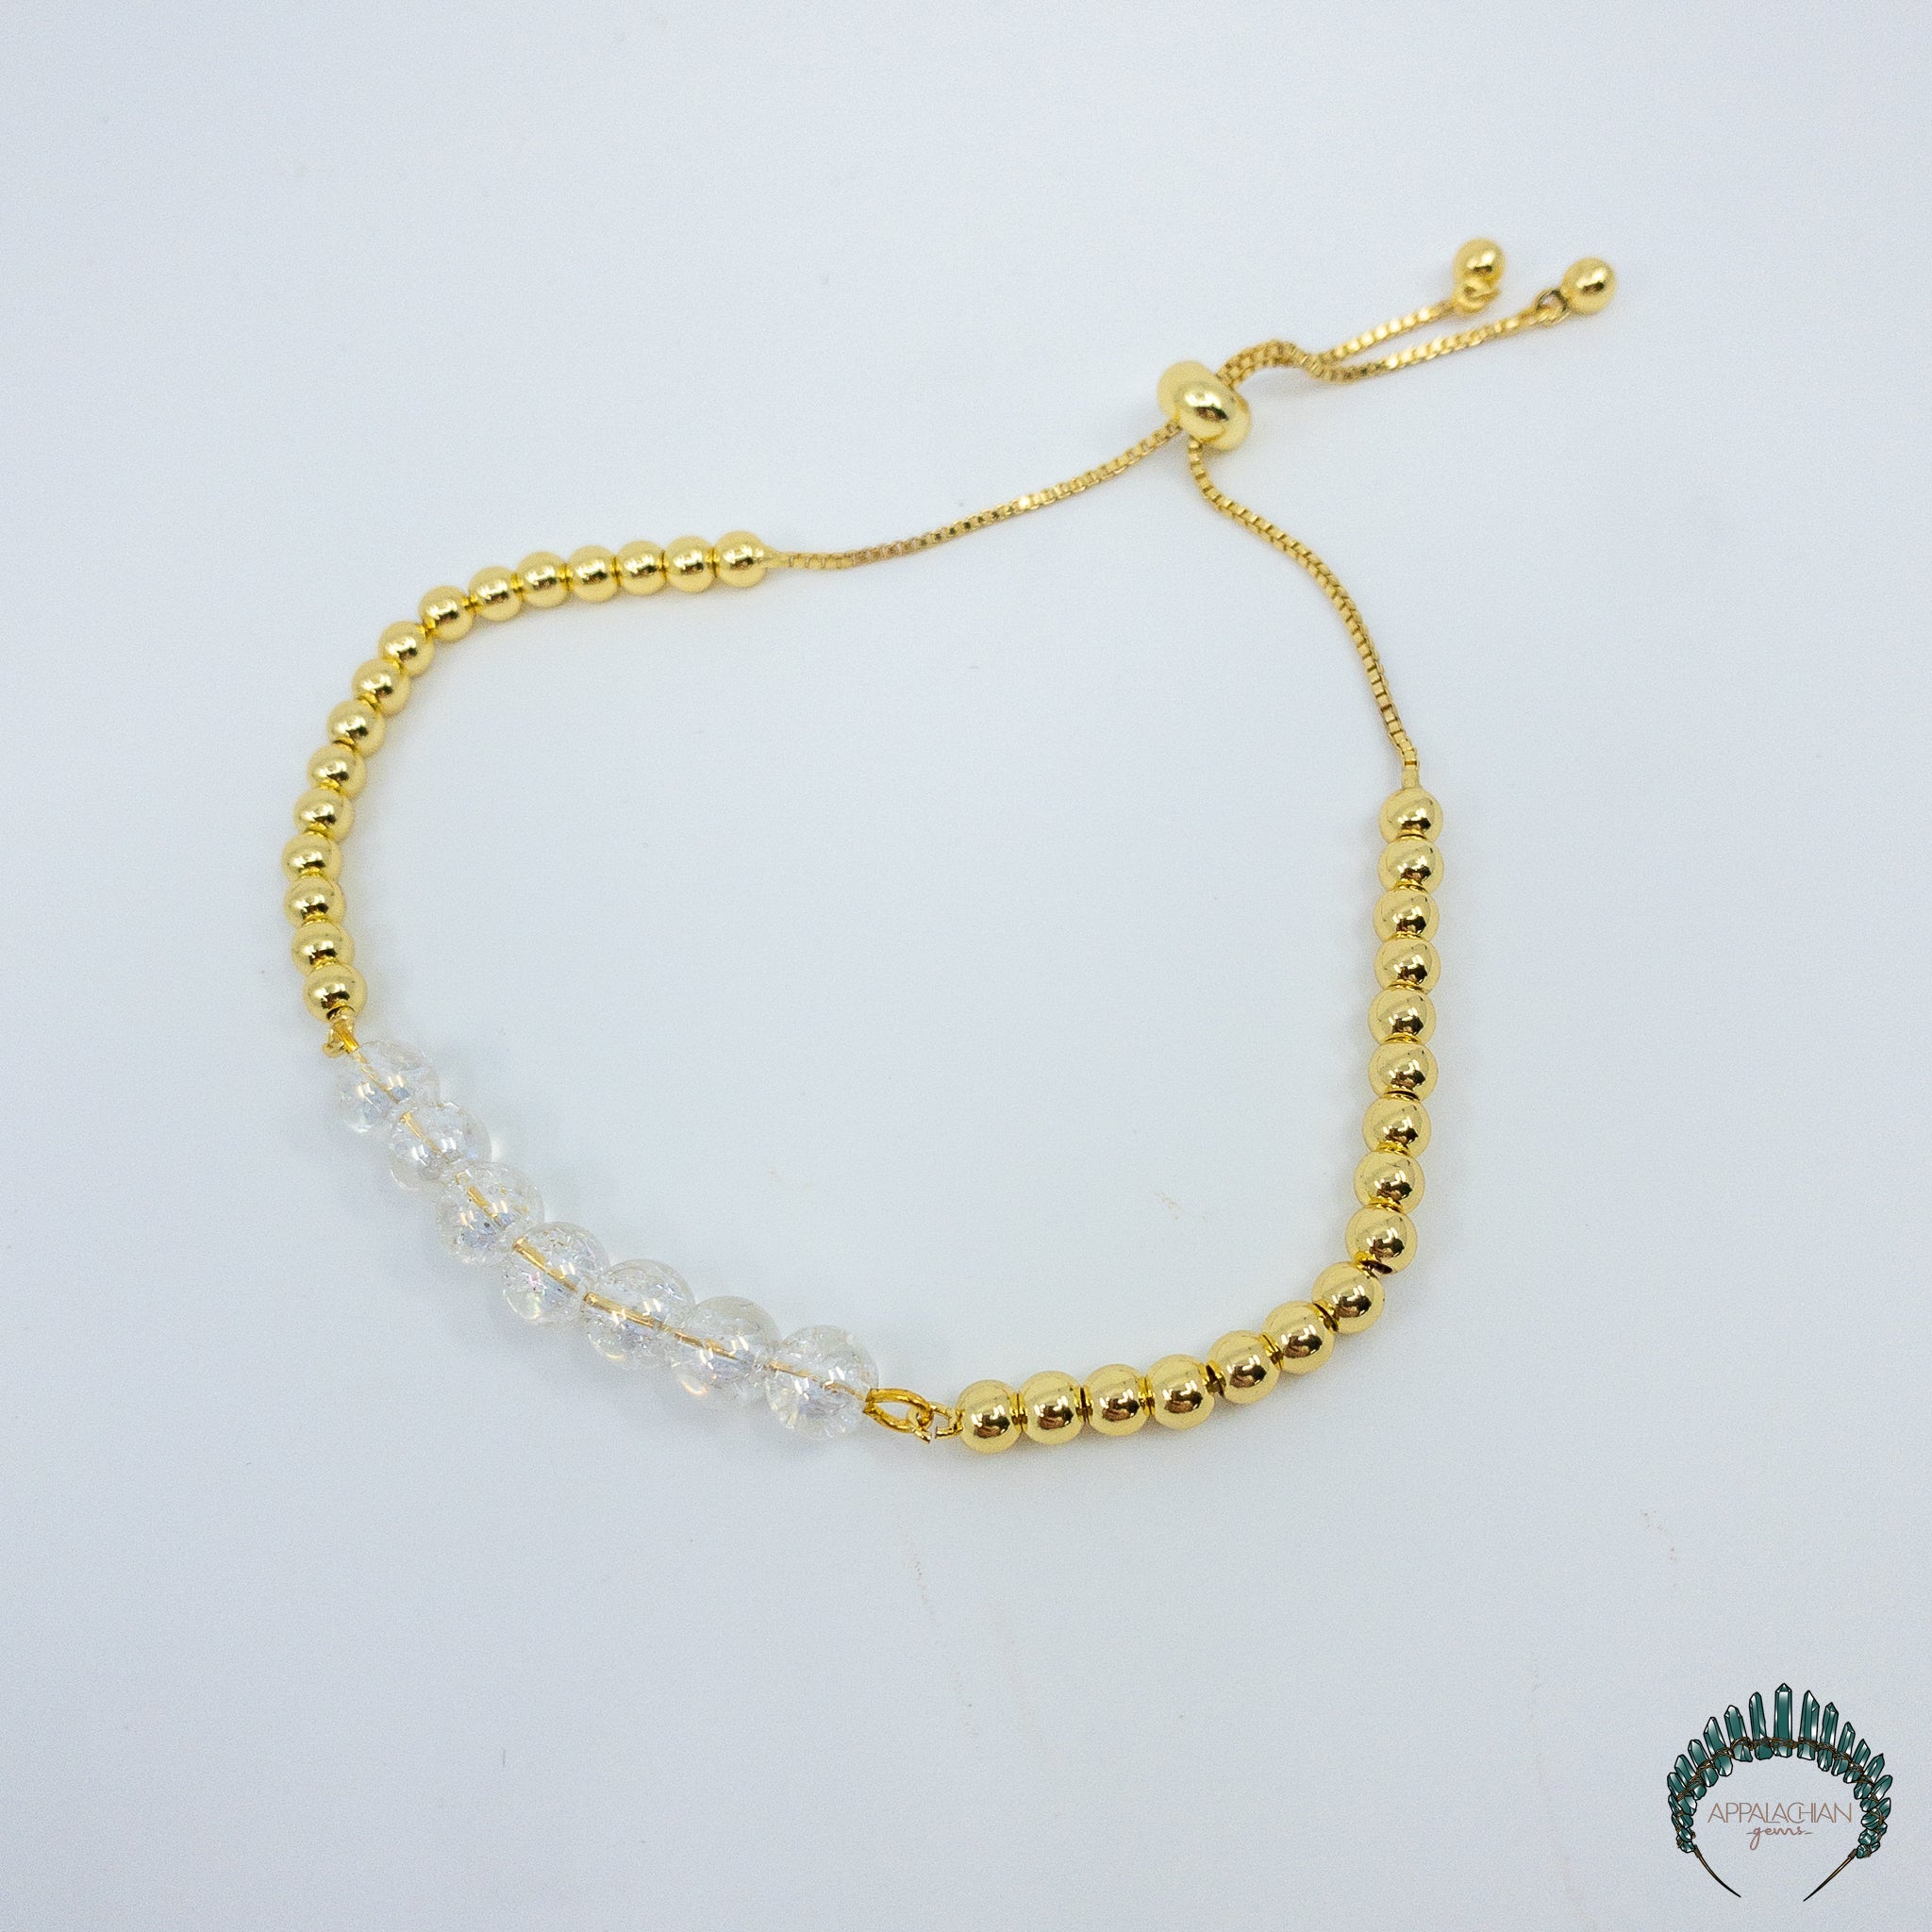 Crackle Aura Quartz Bracelet - Appalachian Gems